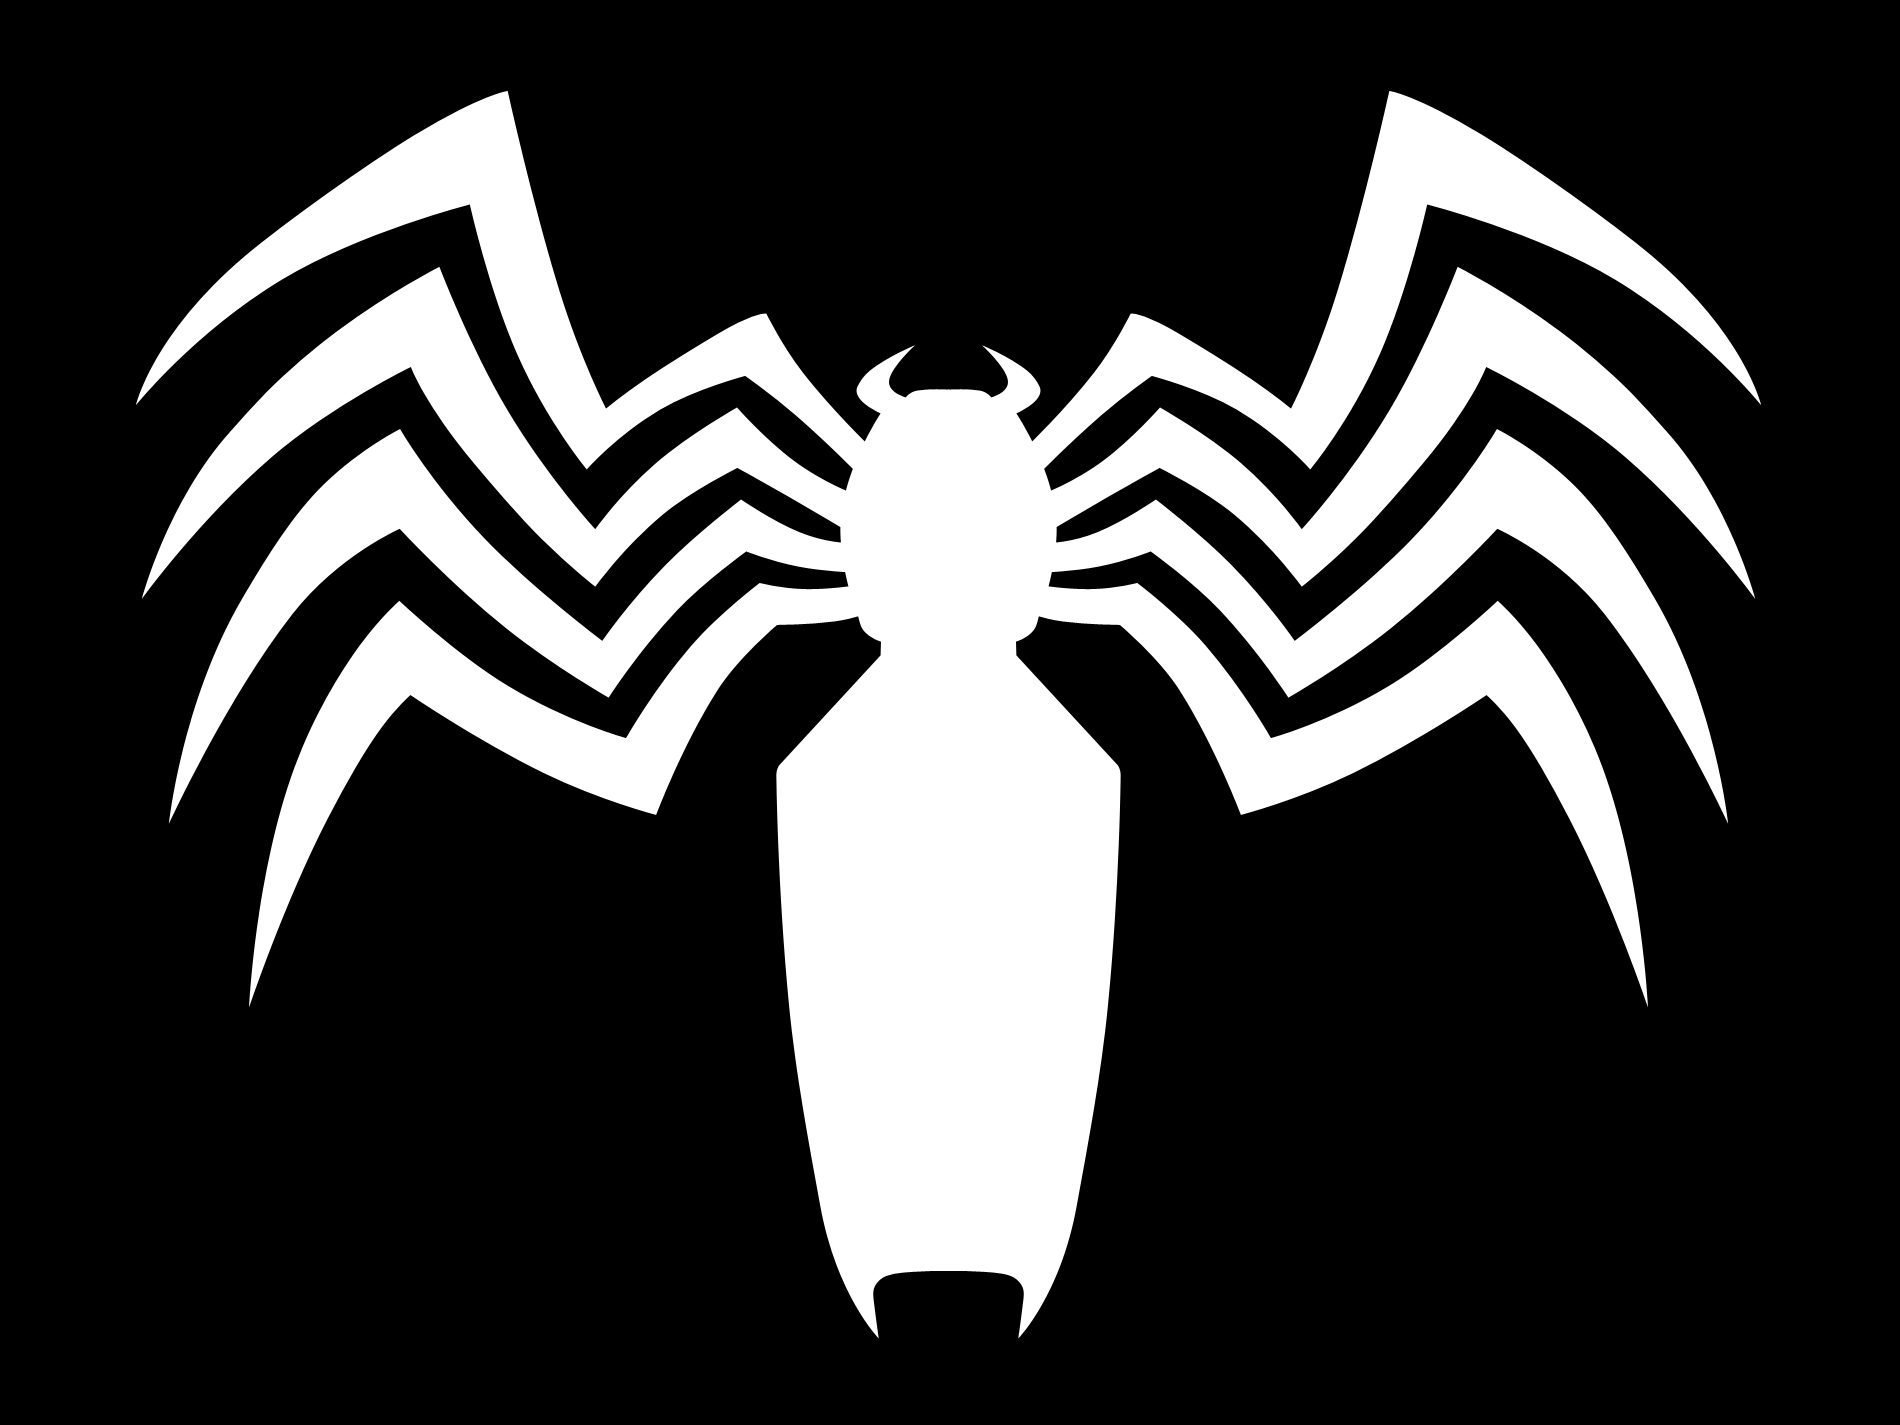 O escritor de Venom, Donny Cates, confirmou a teoria de um fã sobre a origem secreta do símbolo de aranha de Venom. Saiba agora porque o Venom tem uma Aranha.